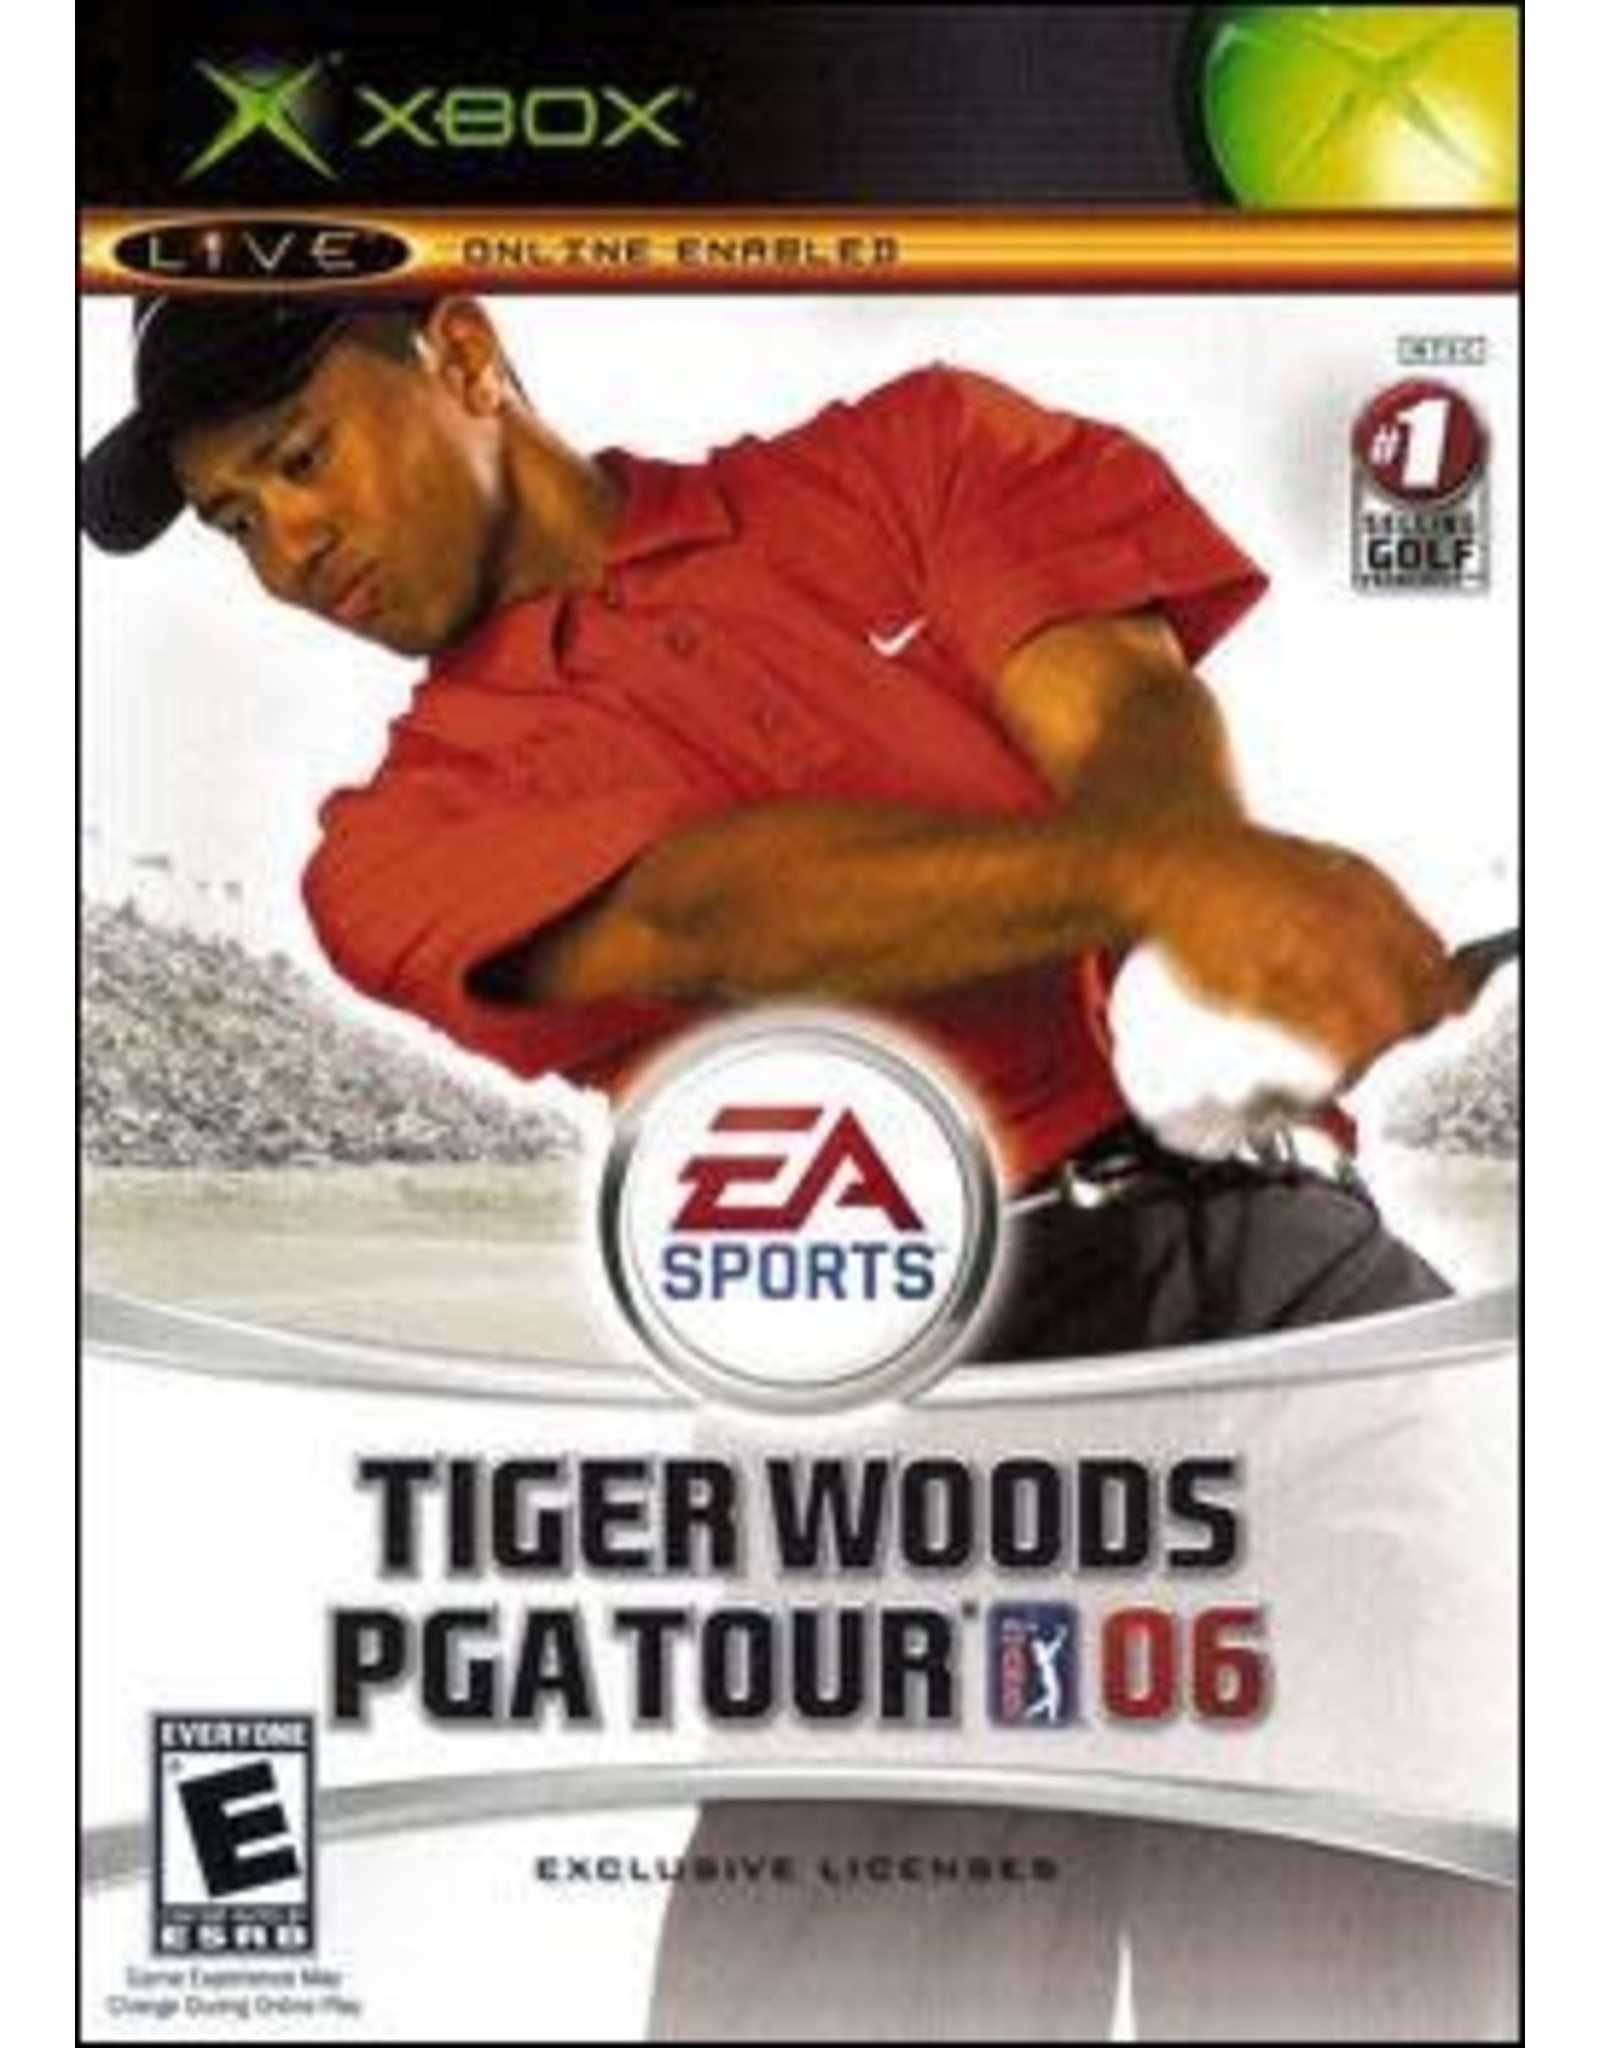 Xbox Tiger Woods PGA Tour 06 (No Manual)